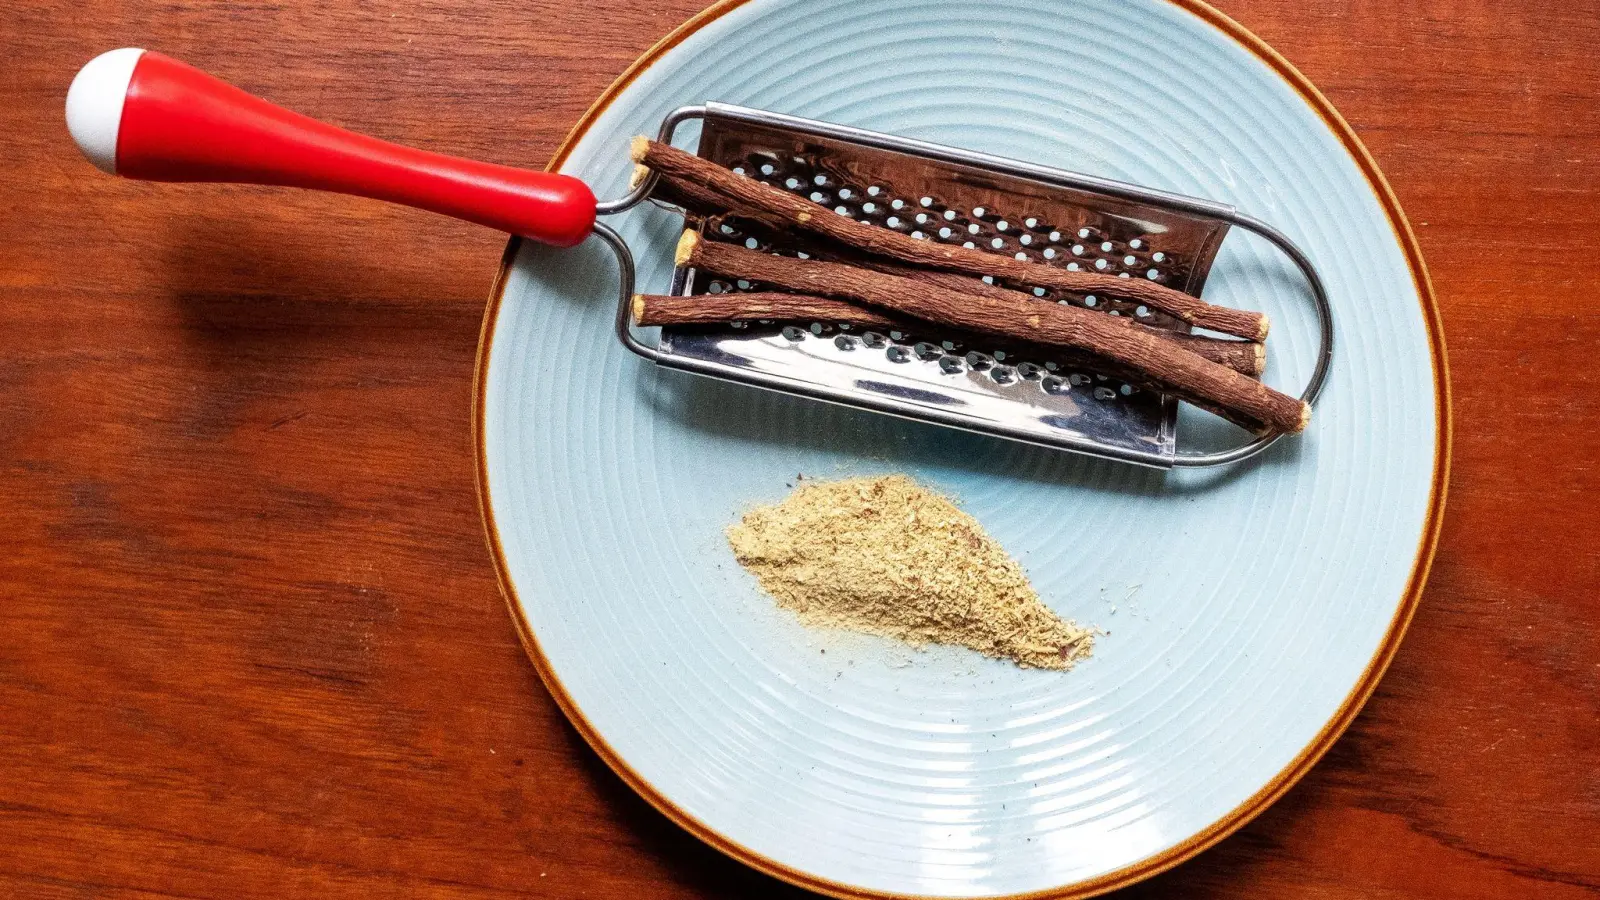 Mit einer Küchenreibe lässt sich aus den Wurzelstücken frisches Süßholzpulver raspeln. (Foto: Bernd Diekjobst/dpa-tmn)